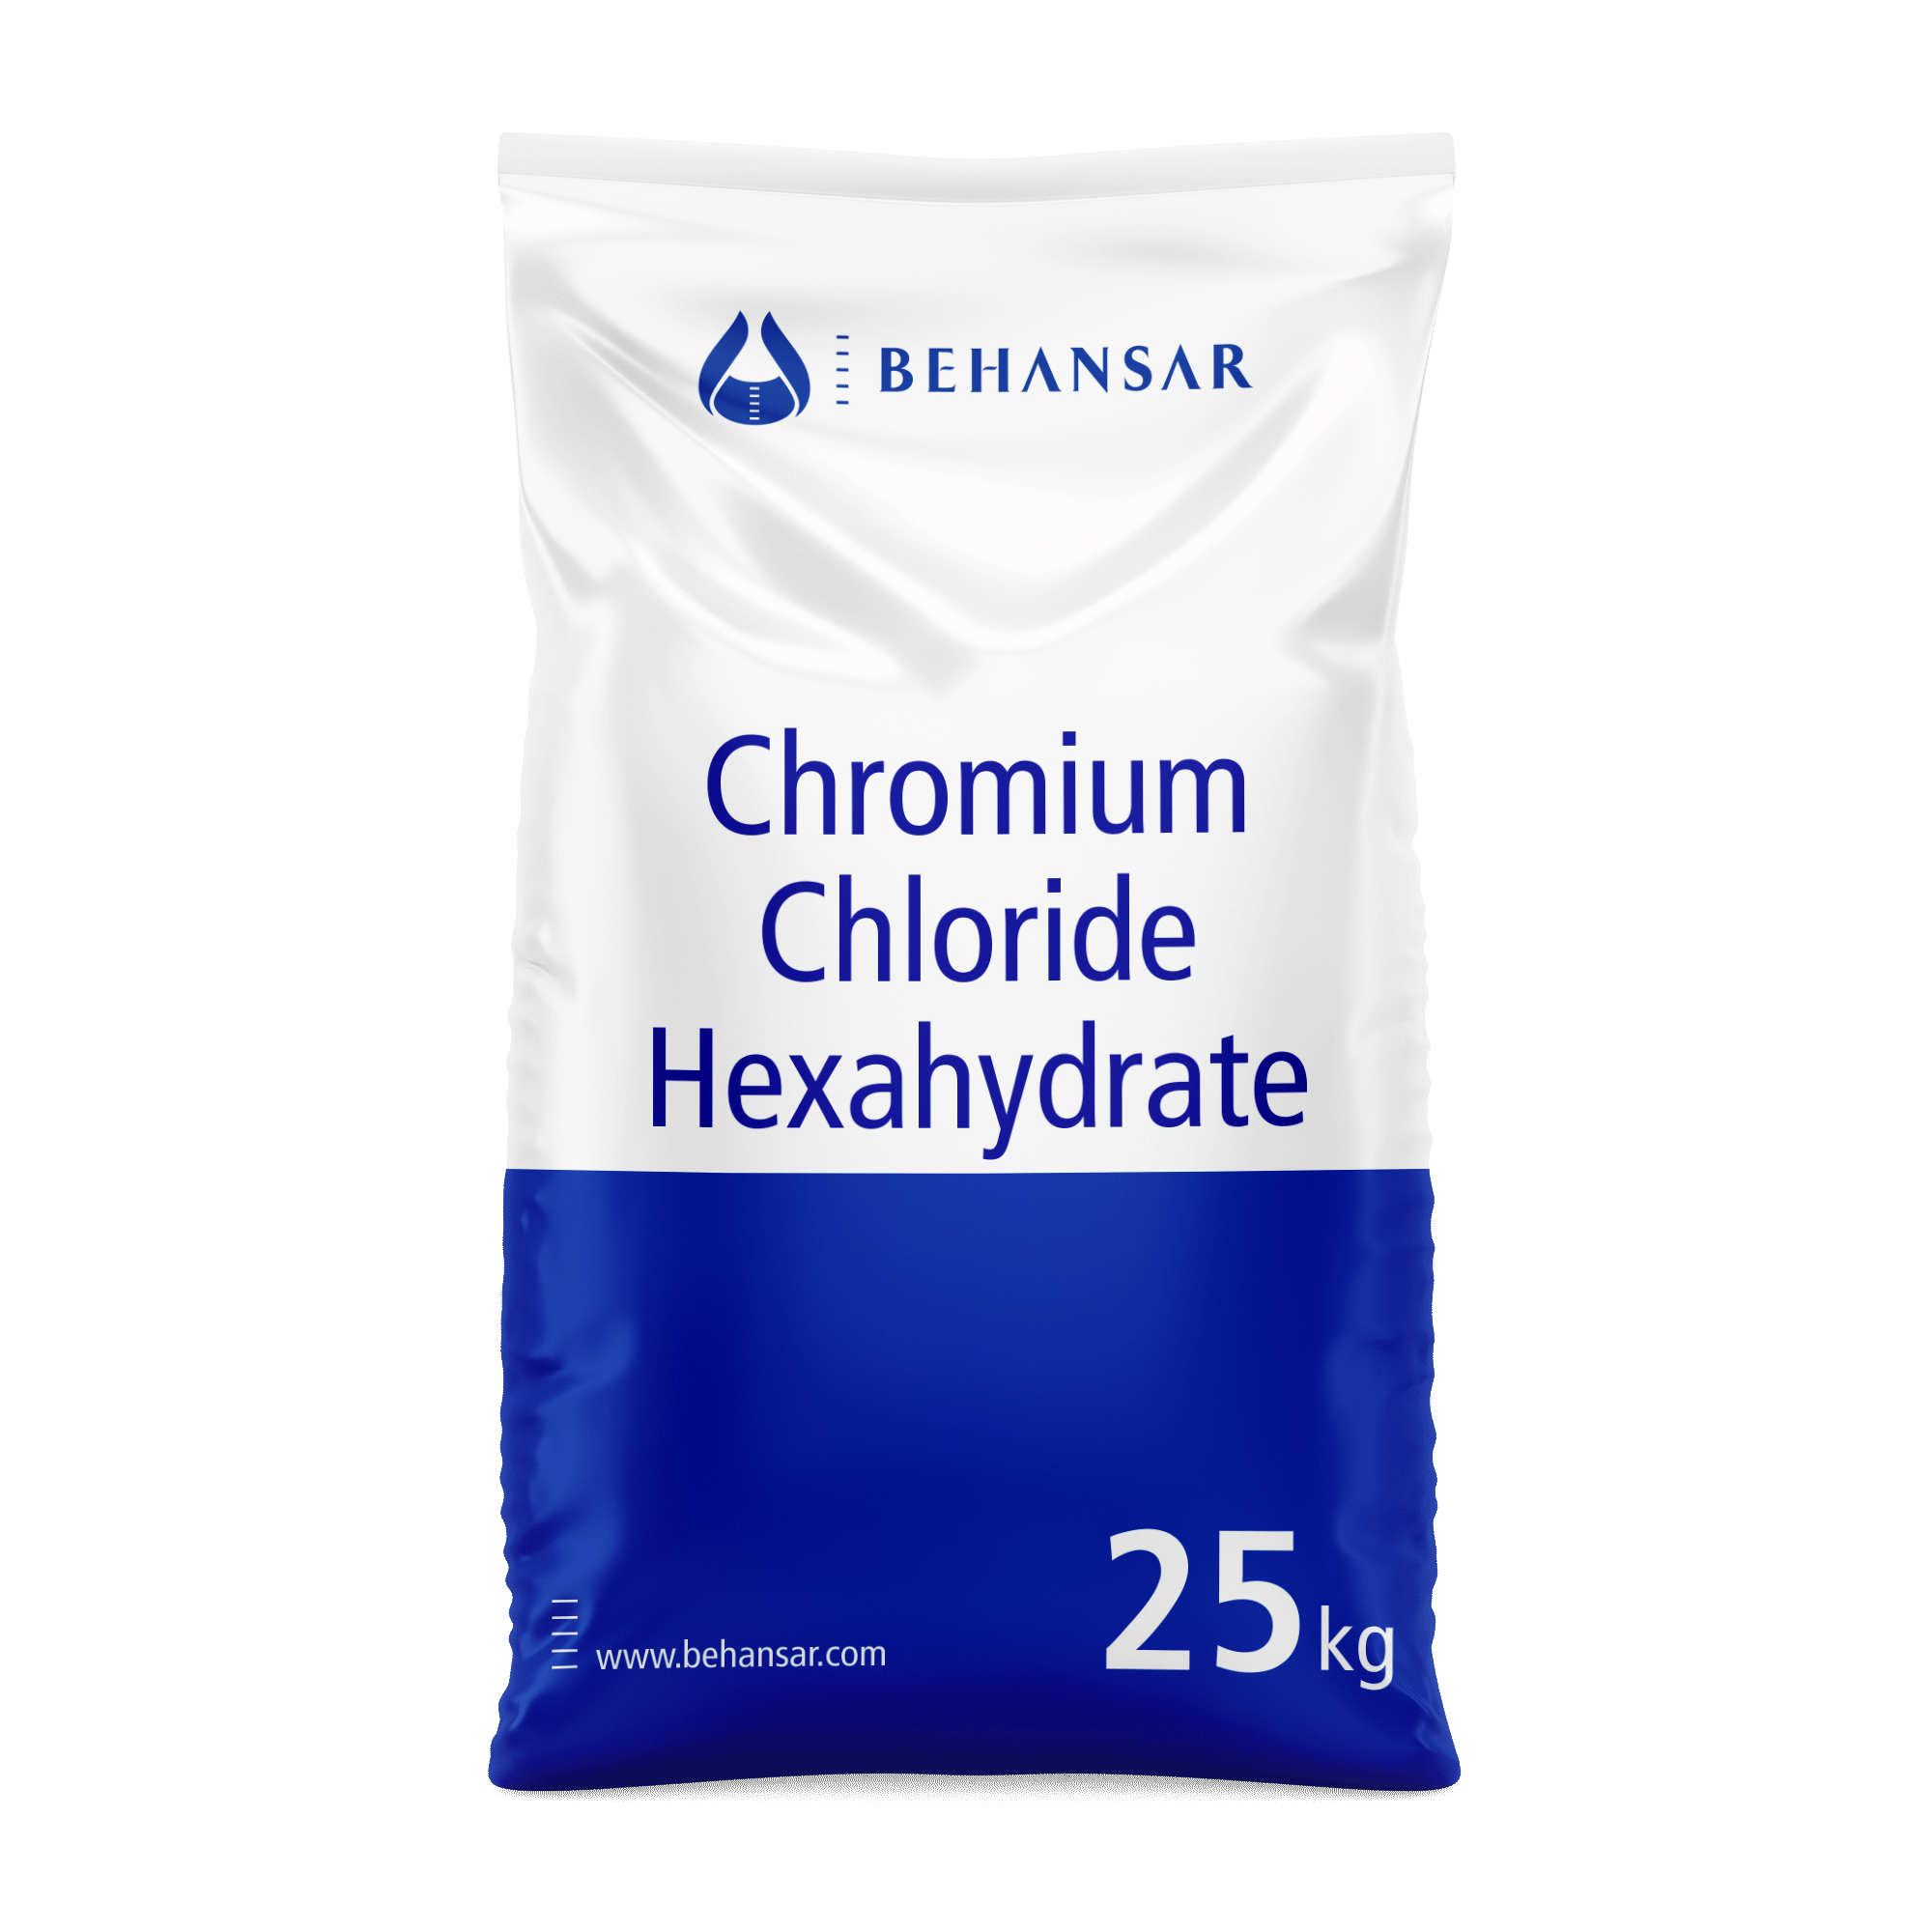 کروم کلراید هگزا هیدرات یکی از تولیدات شرکت بهانسار است